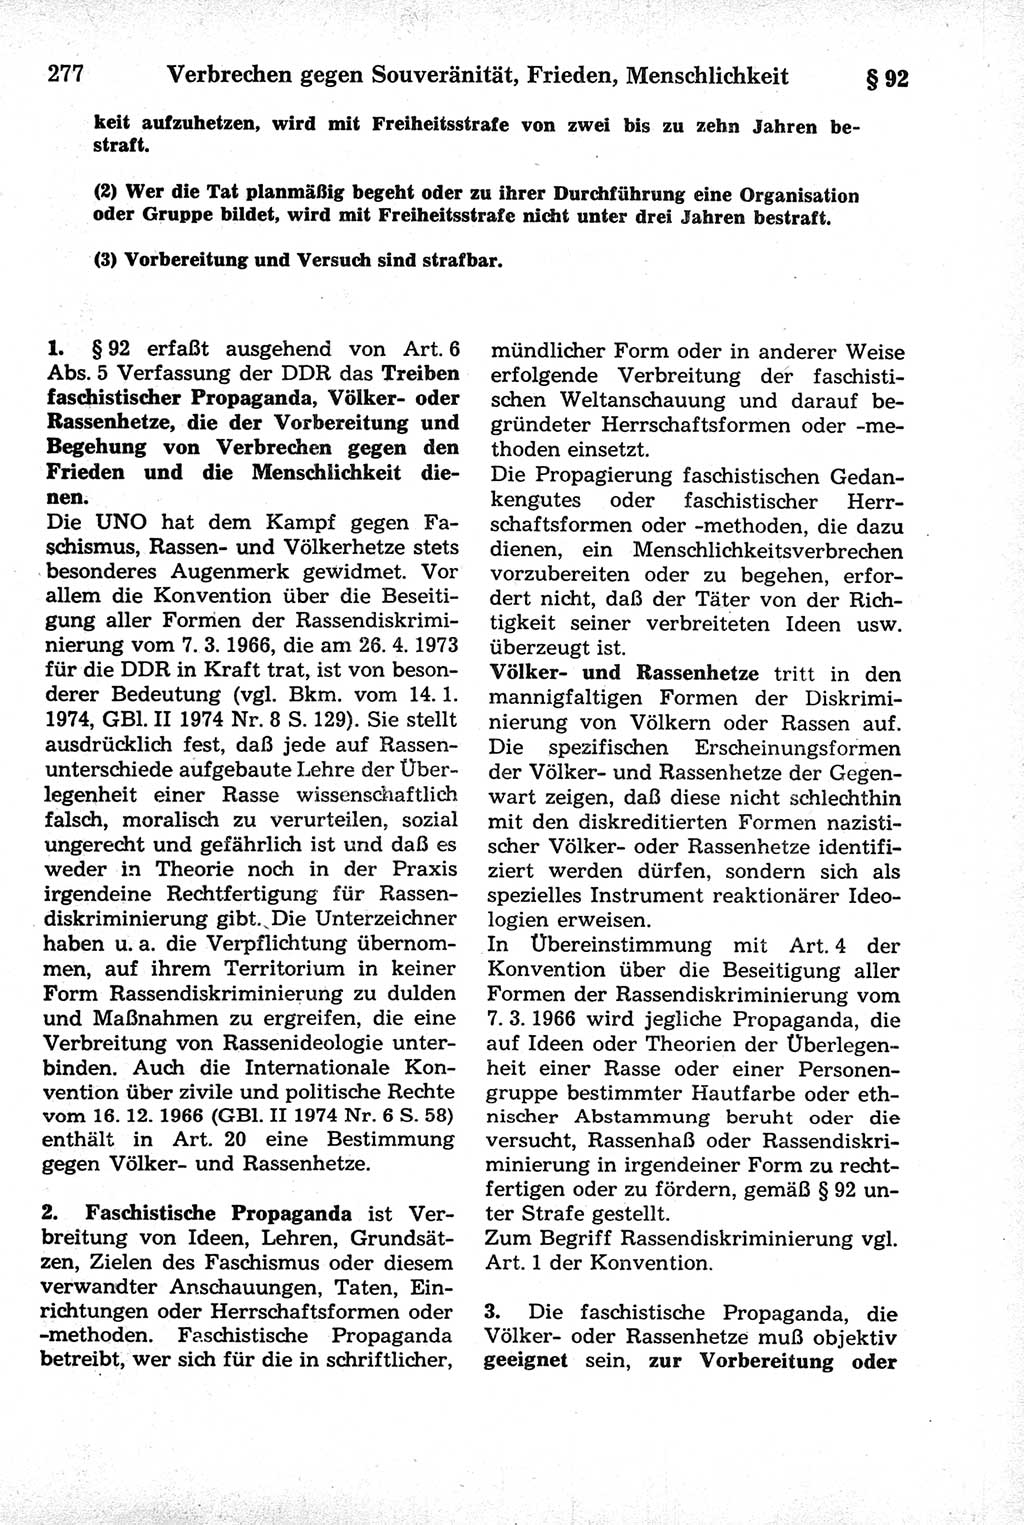 Strafrecht der Deutschen Demokratischen Republik (DDR), Kommentar zum Strafgesetzbuch (StGB) 1981, Seite 277 (Strafr. DDR Komm. StGB 1981, S. 277)